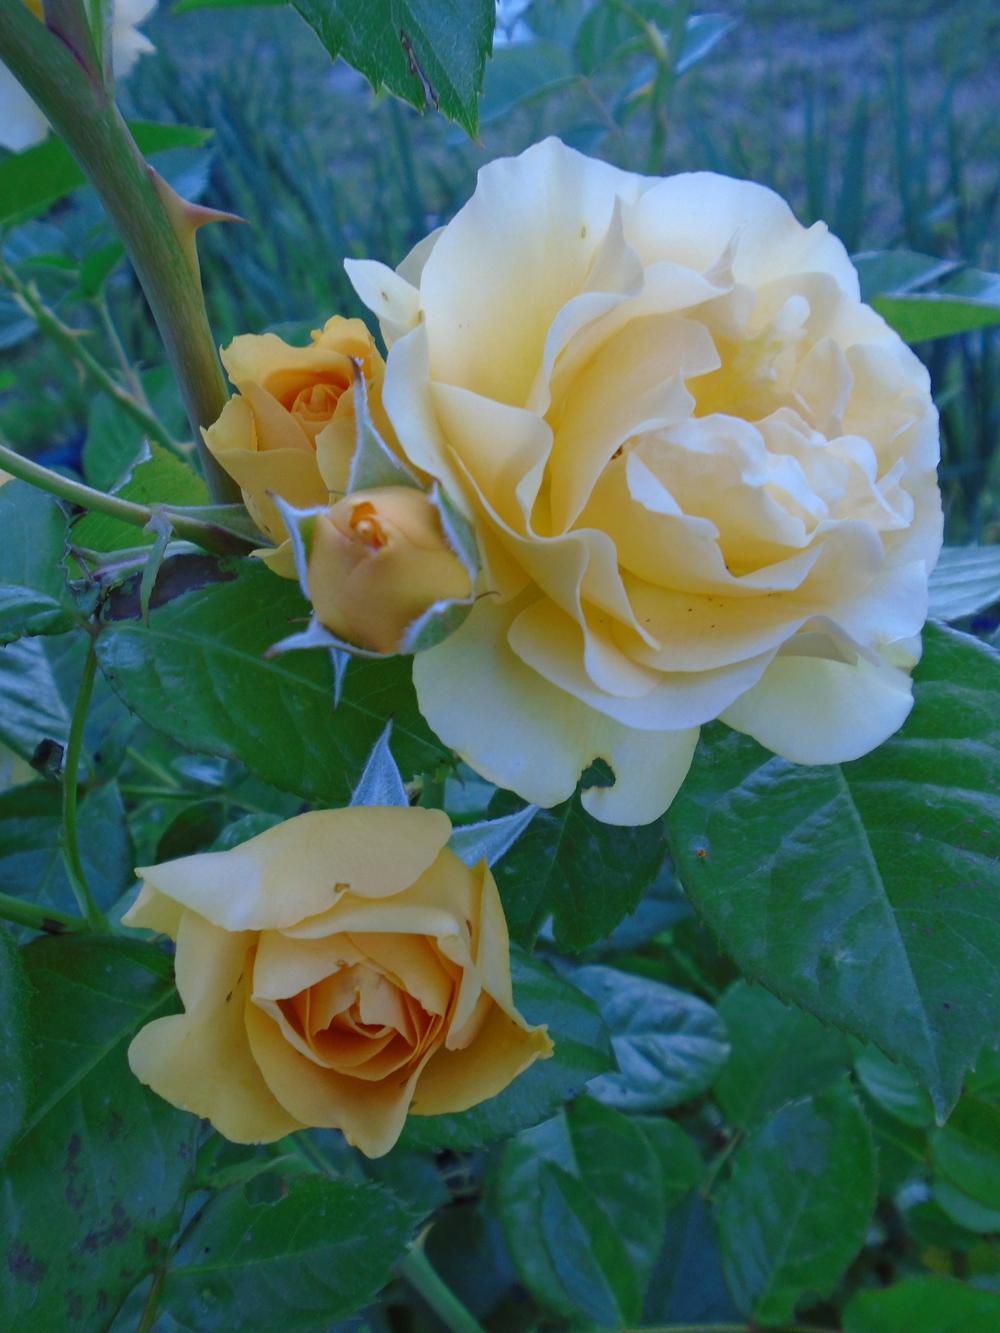 Photo of Floribunda Rose (Rosa 'Julia Child') uploaded by Paul2032